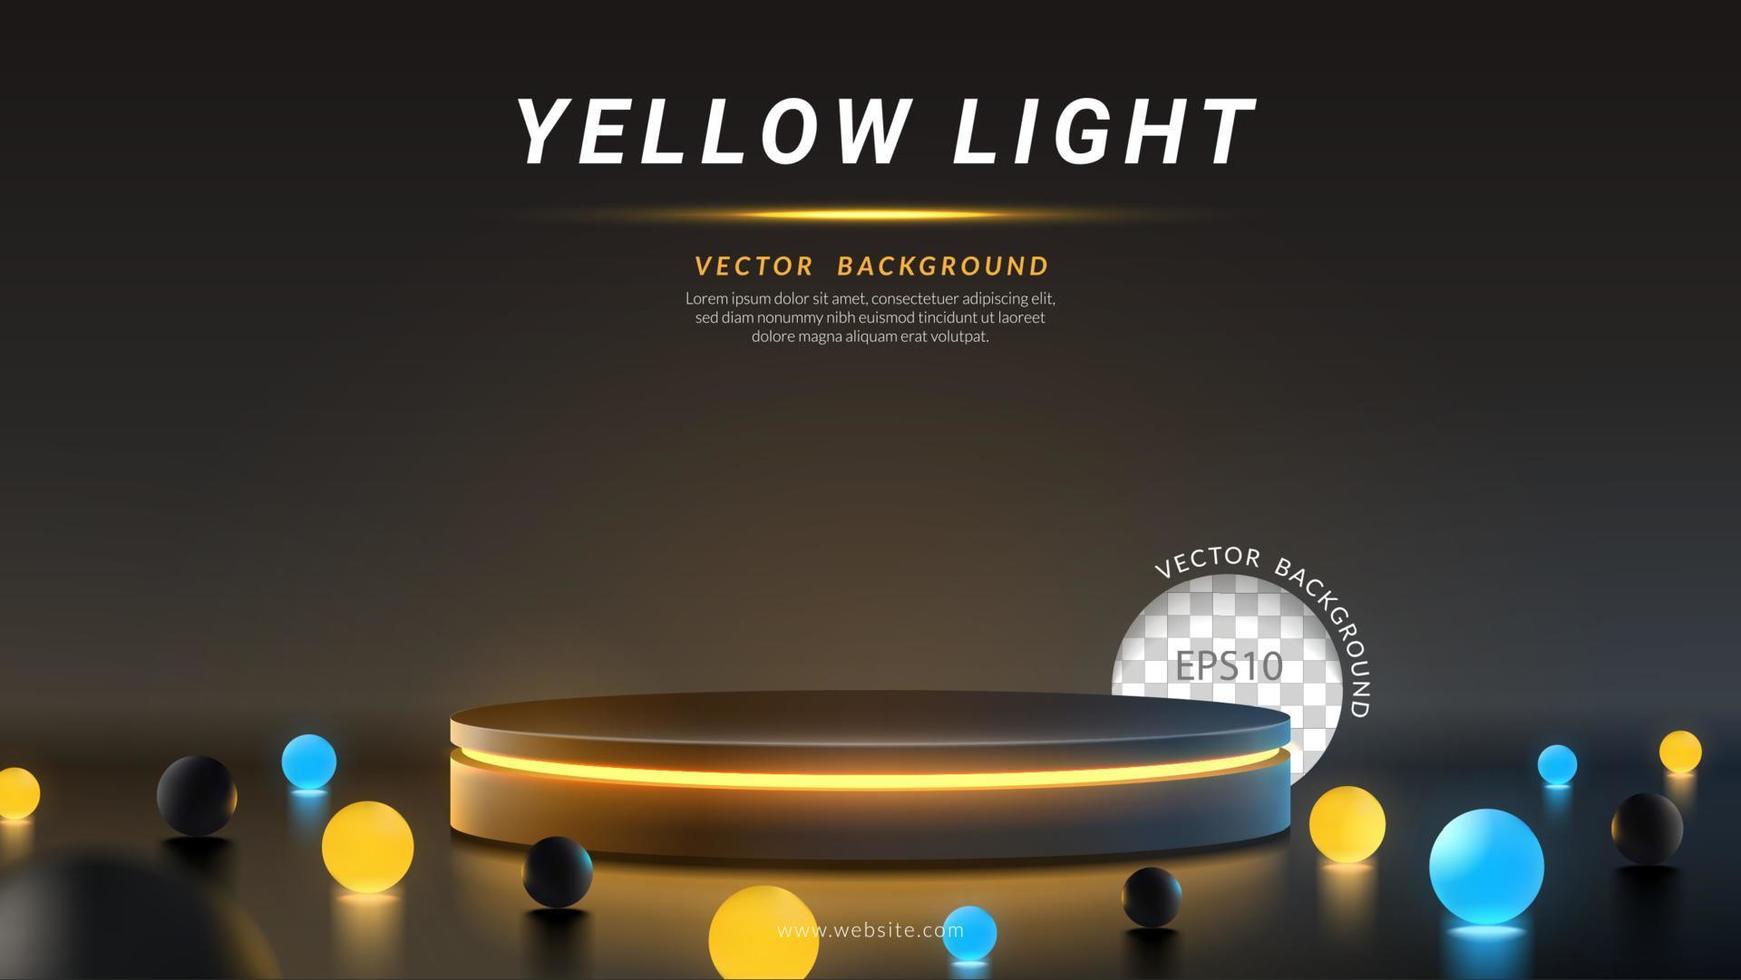 cilinderpodium met geel neonlicht, gloedbal op een zwarte achtergrond. concept van ontwerp voor productweergave. lay-out horizontaal, vectorillustratie vector